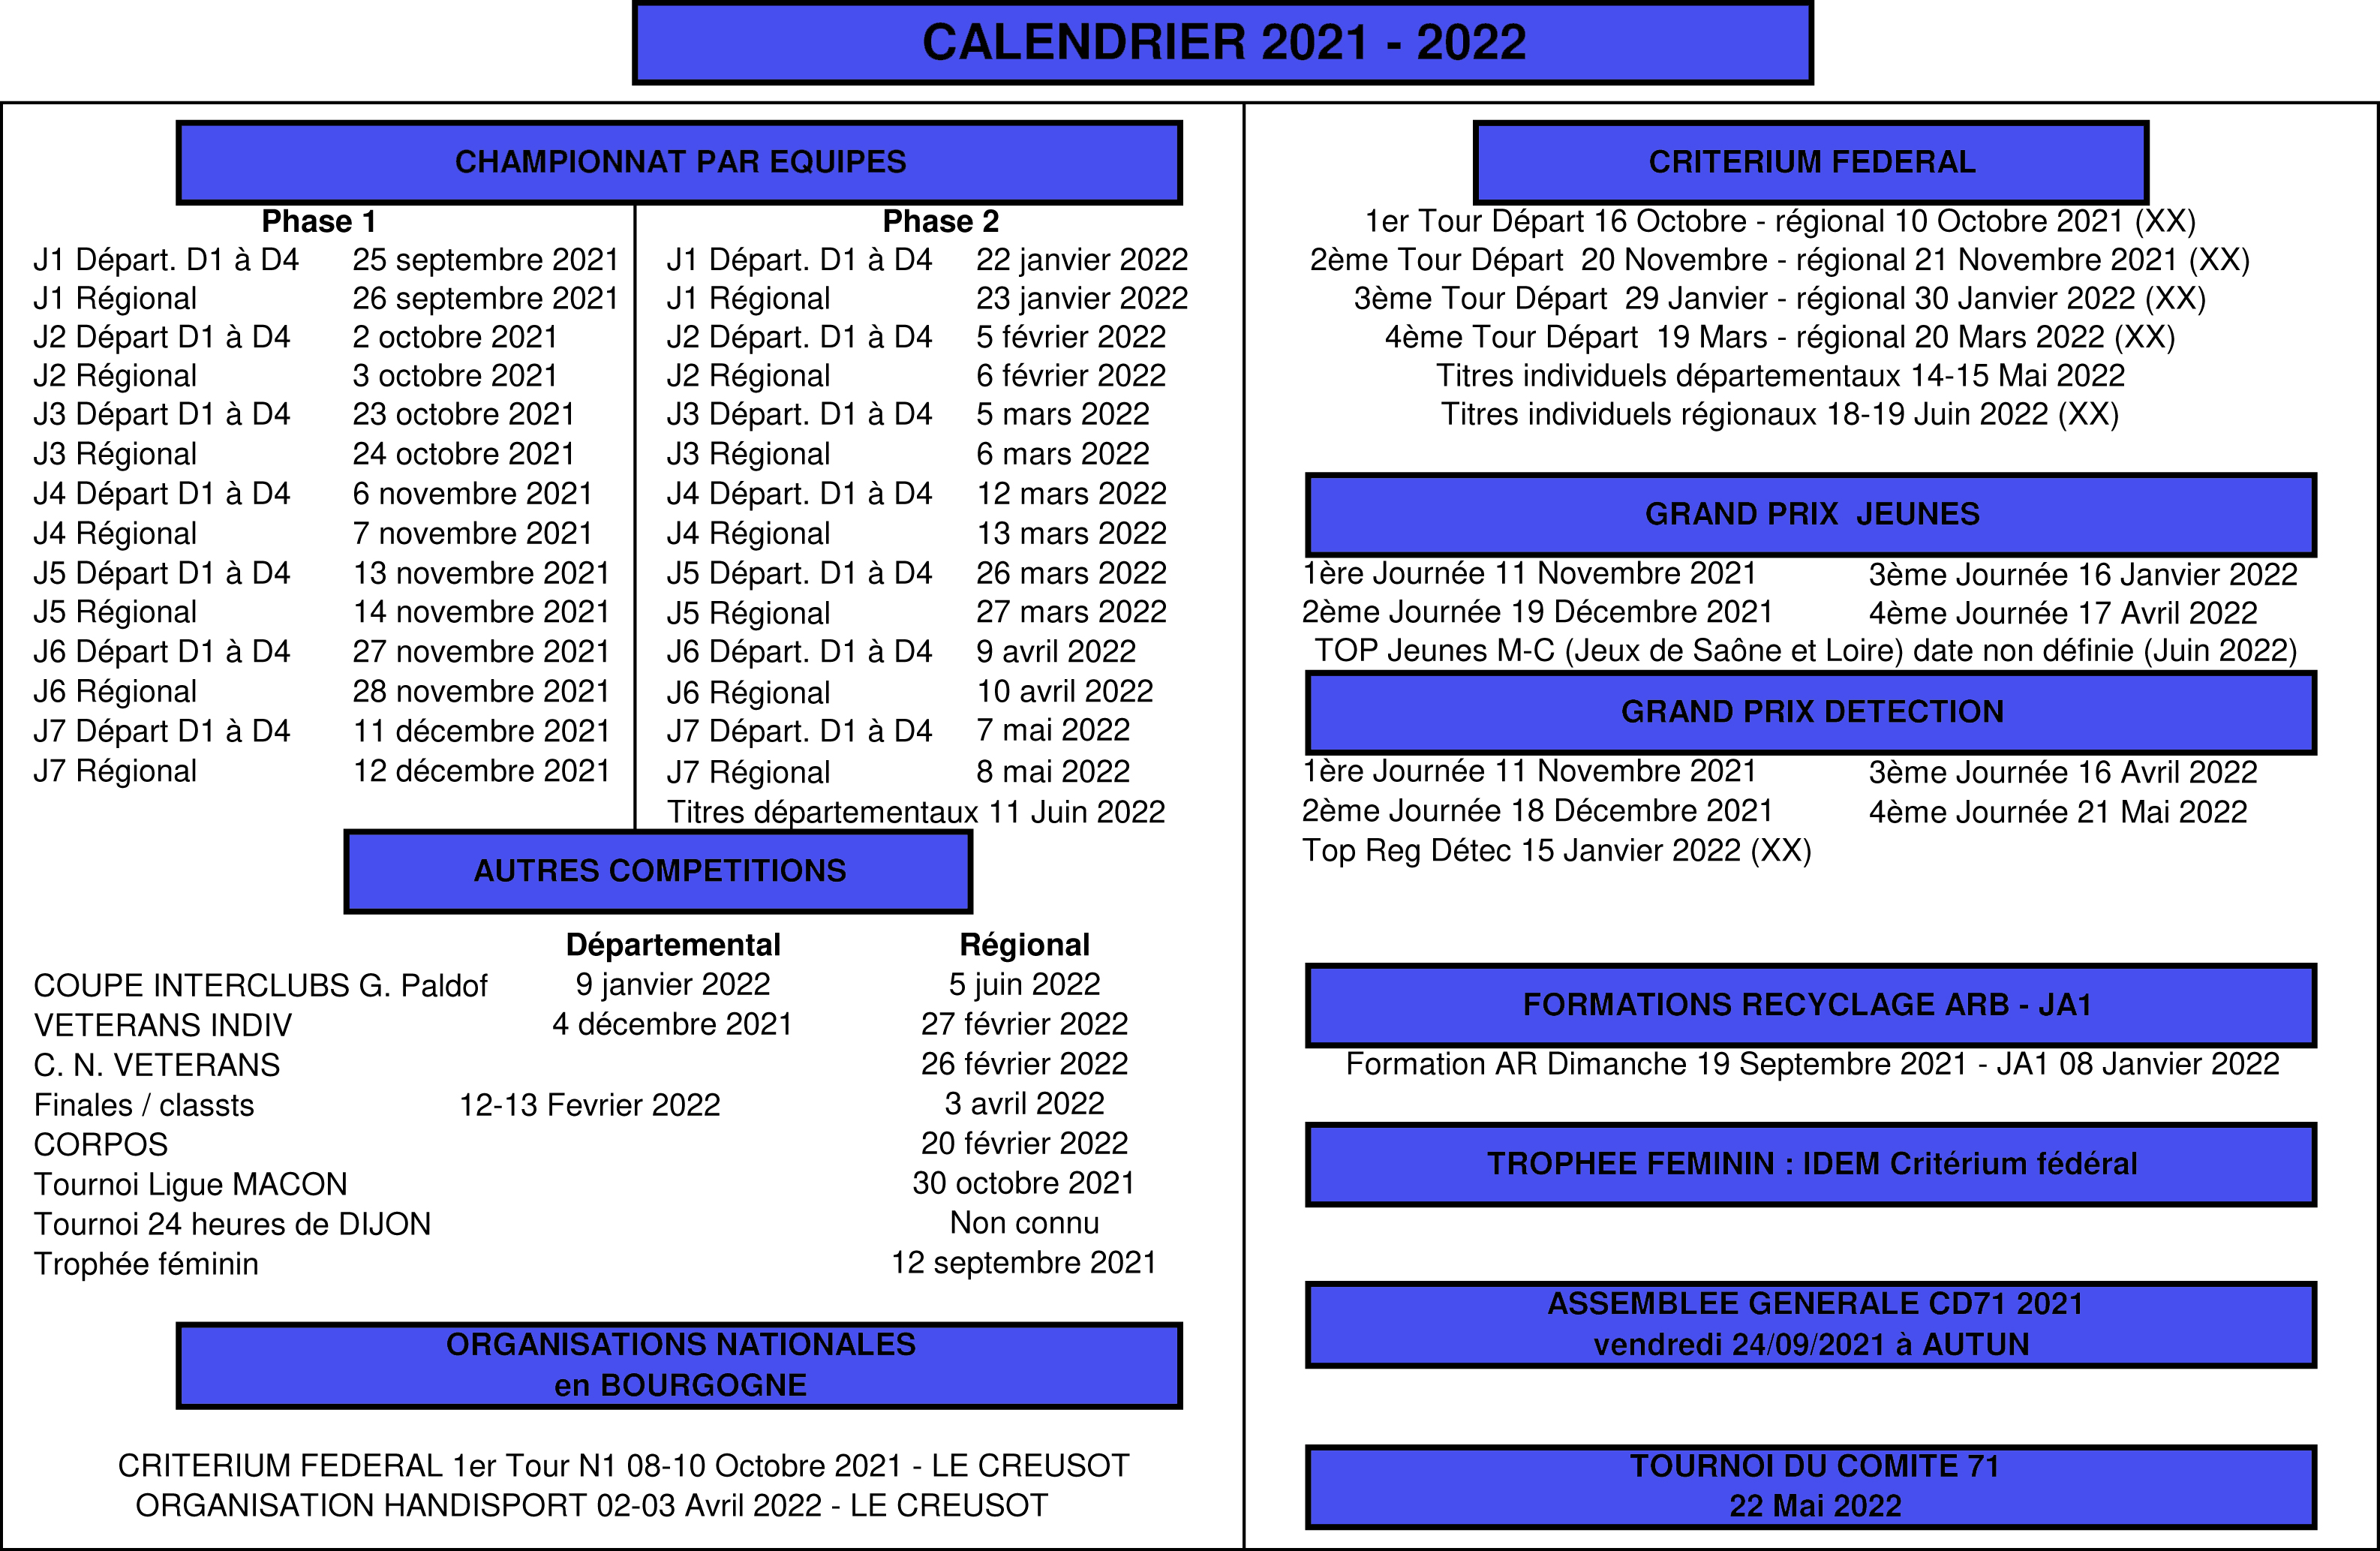 Calendrier-condense-2021-2022_V2.jpg